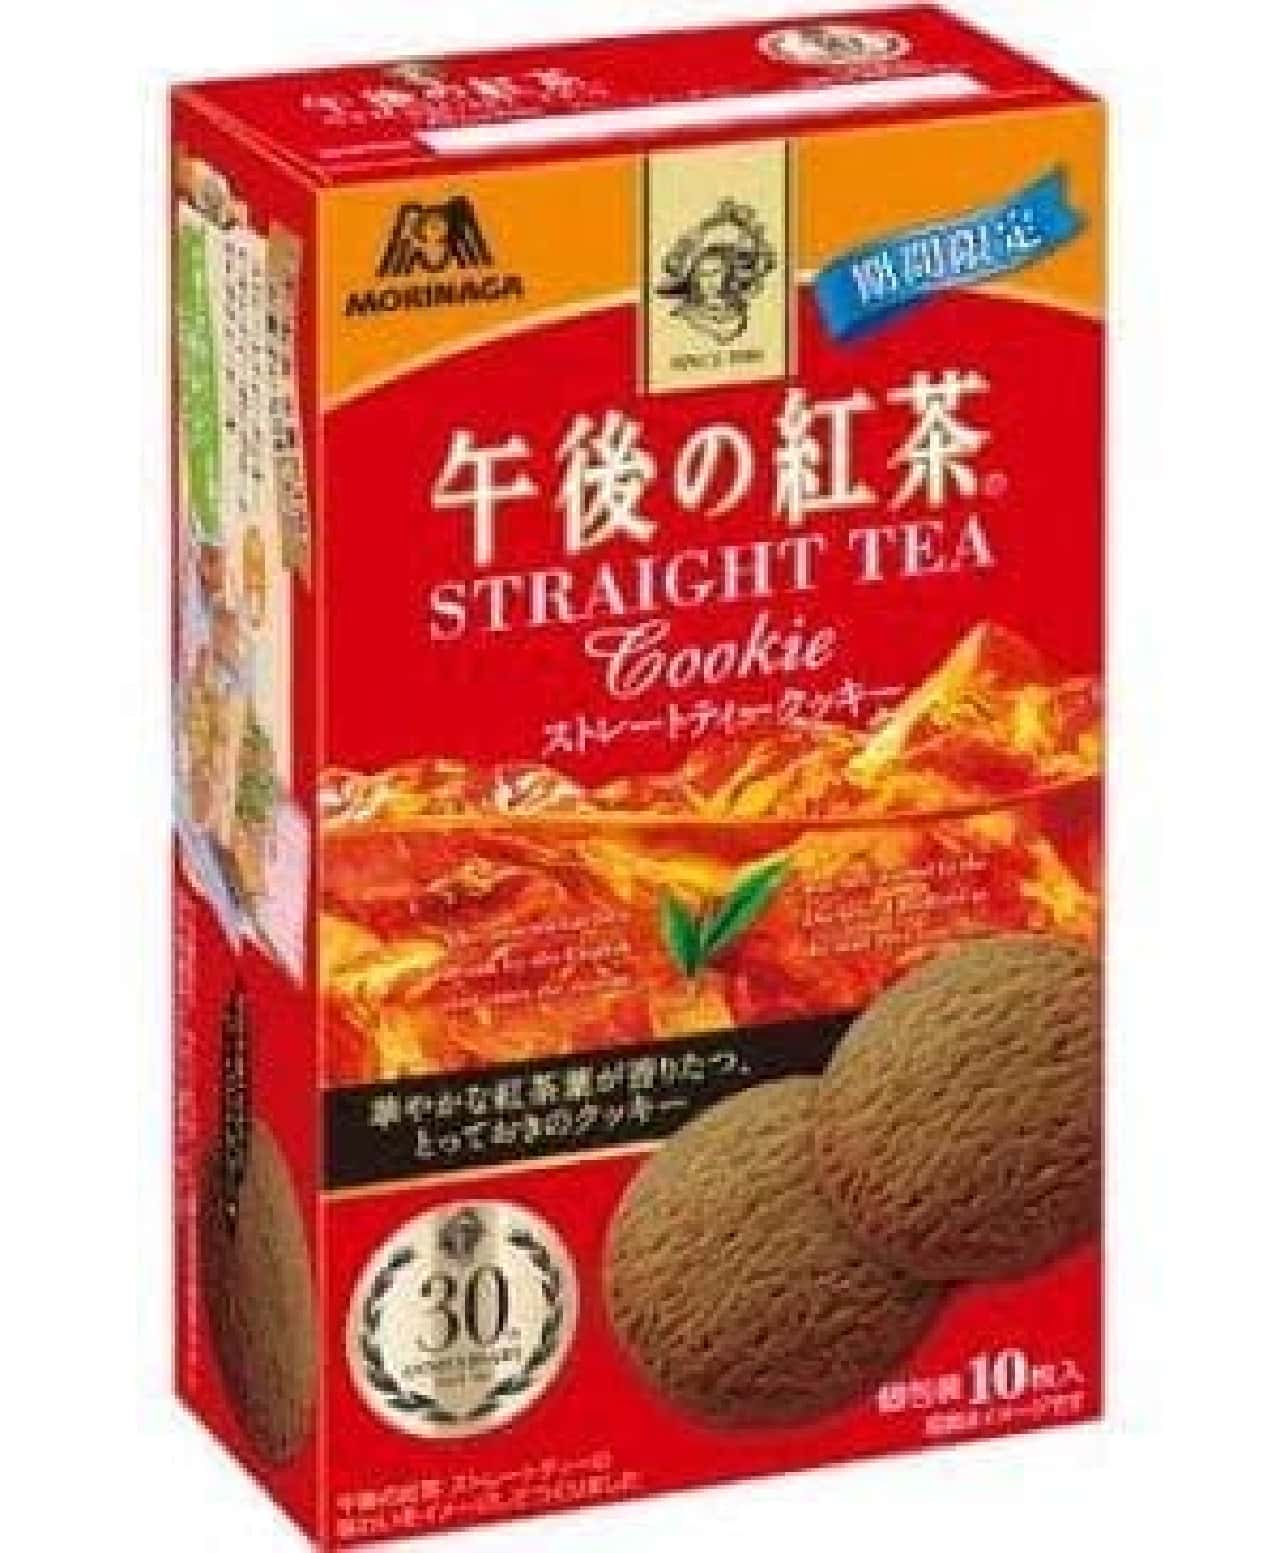 Morinaga & Co. "Afternoon Tea [Straight Tea Cookie]"